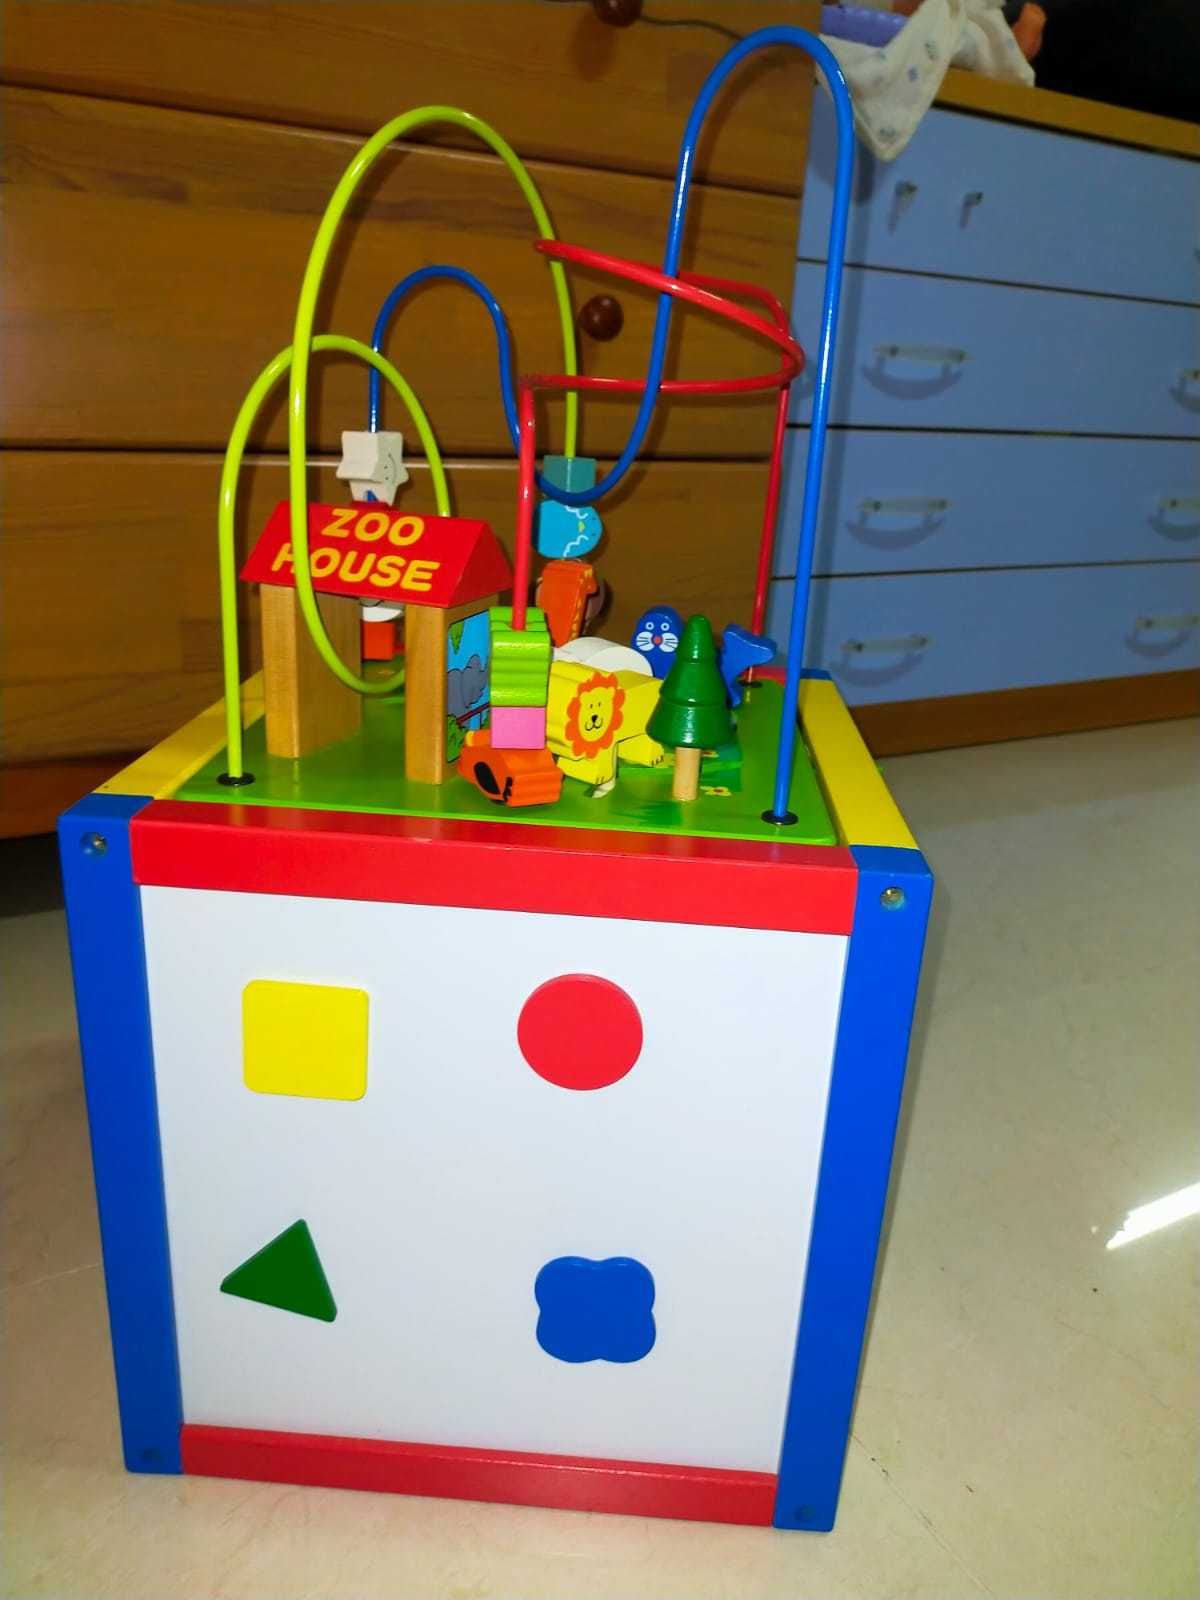 Brinquedo de madeira - cubo com várias funções